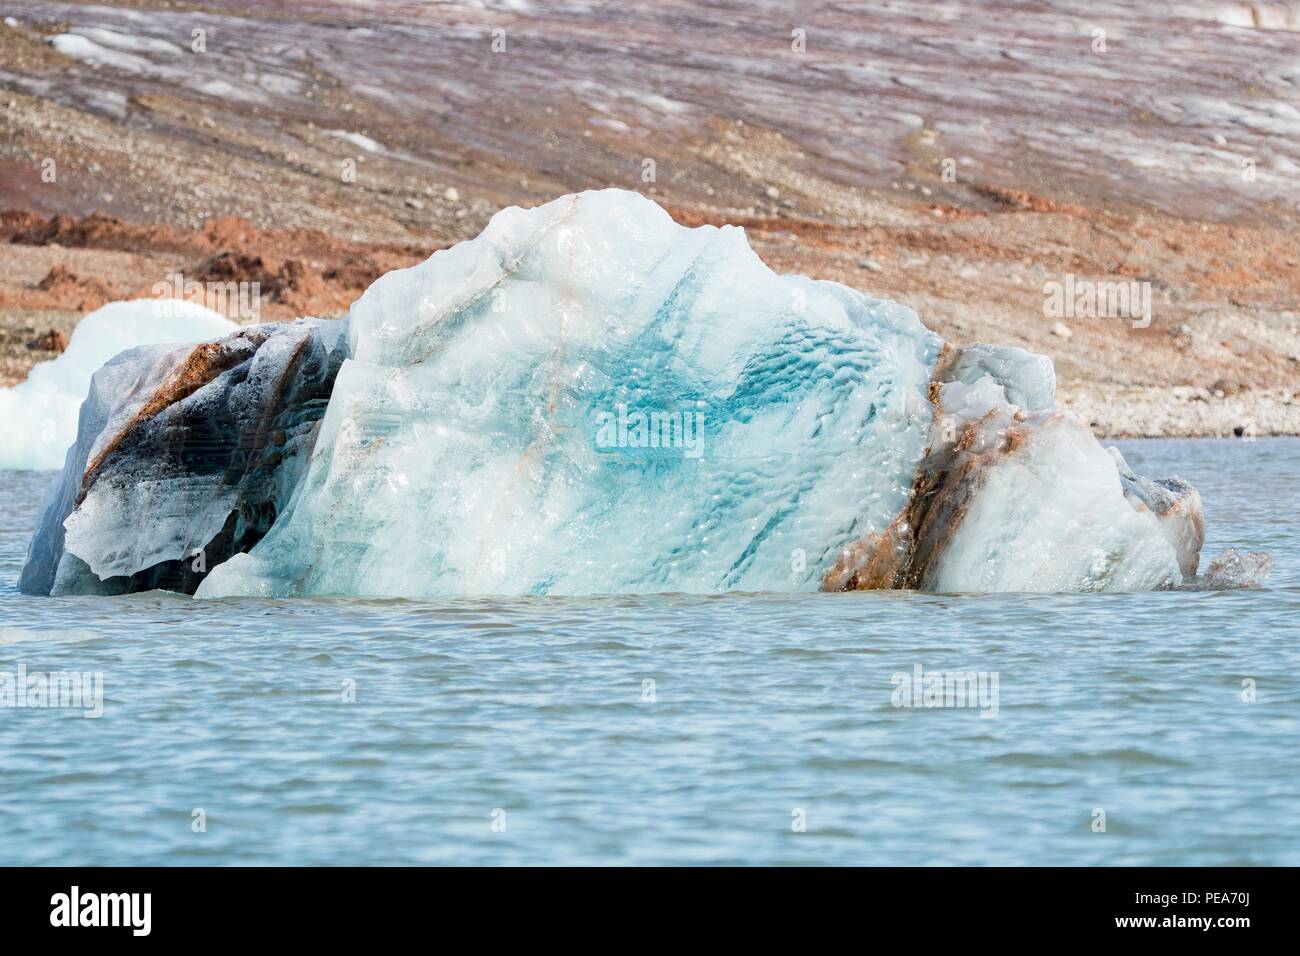 Texture di ghiaccio prese dal mare, che mostra la bellezza del ghiacciaio in Svalbard Foto Stock